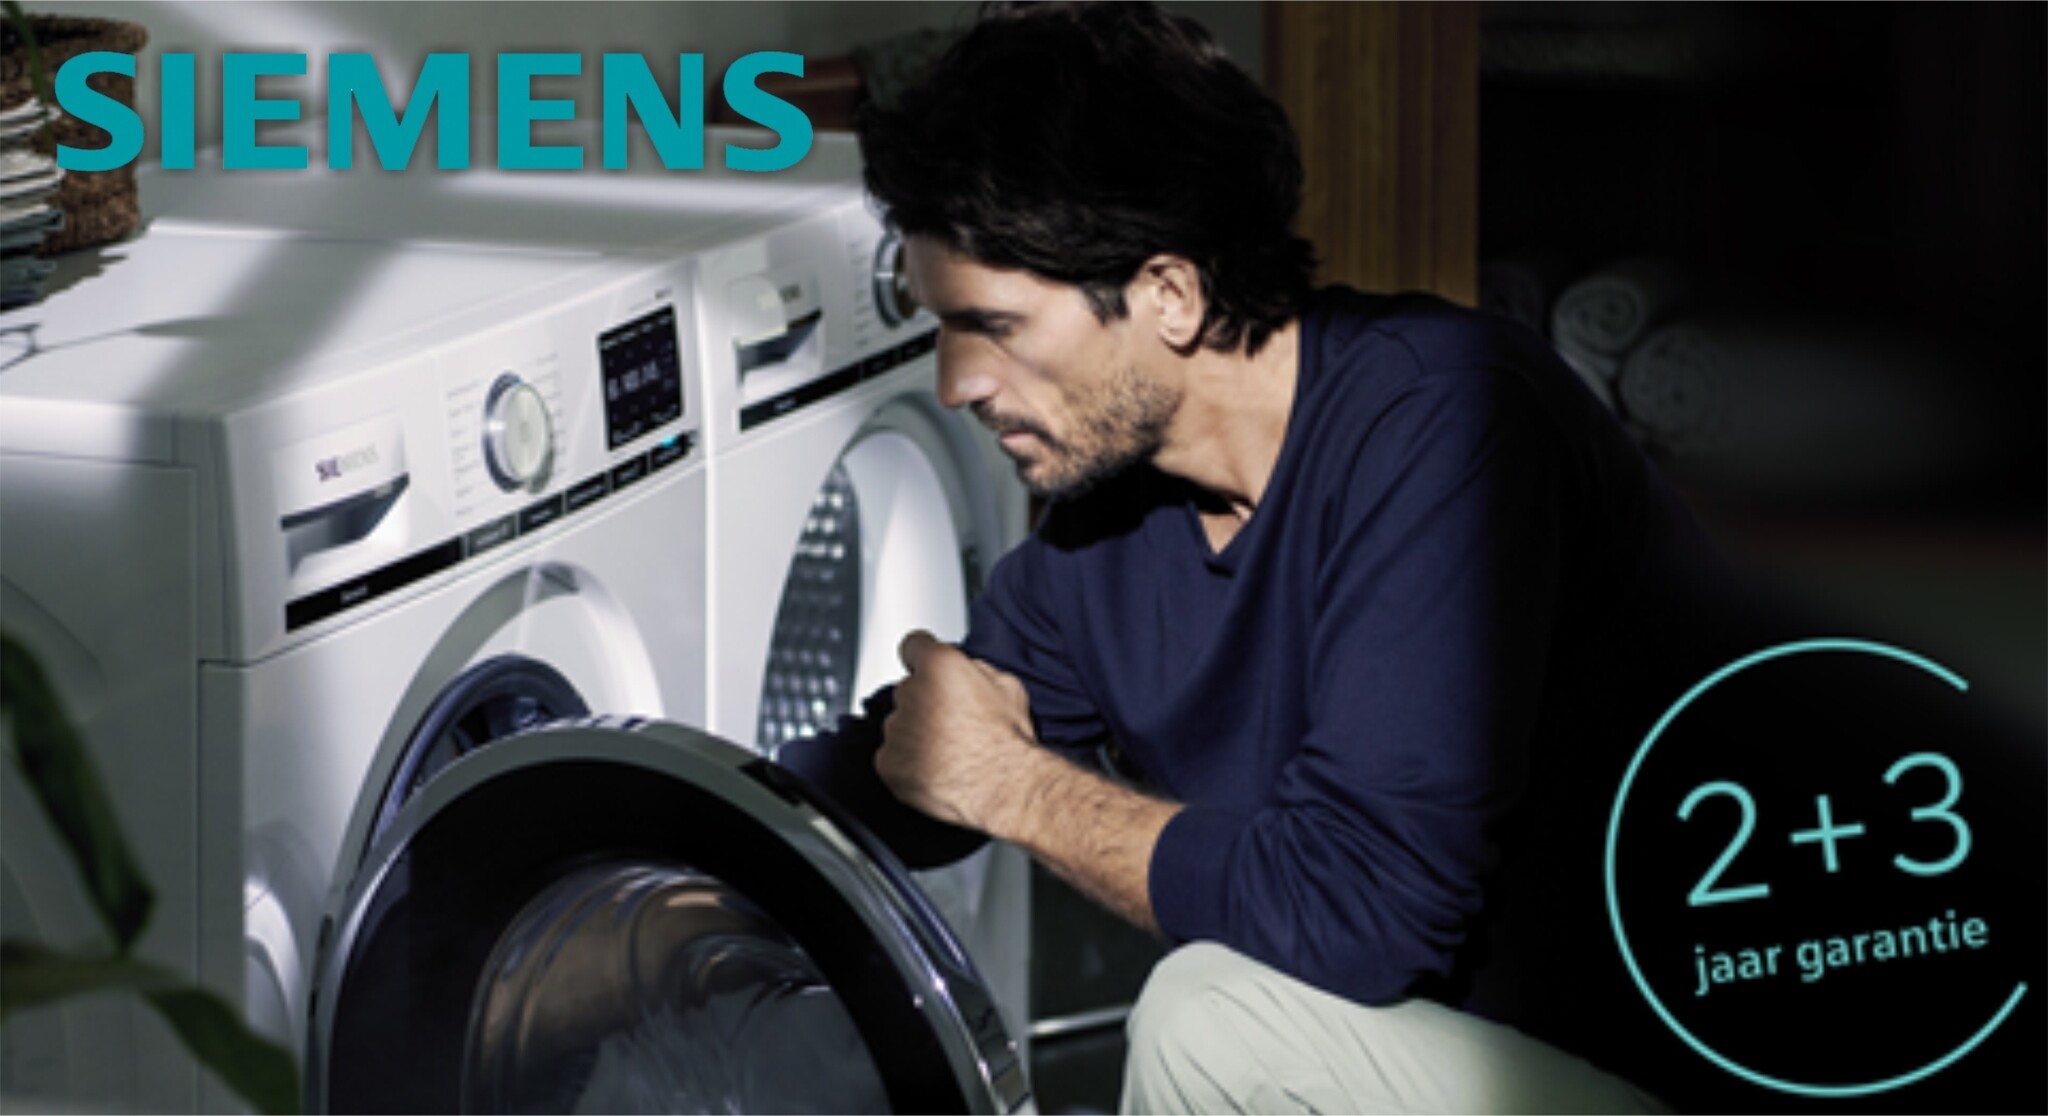 Siemens actie: ExtraKlasse - Nu 2+3 jaar garantie!